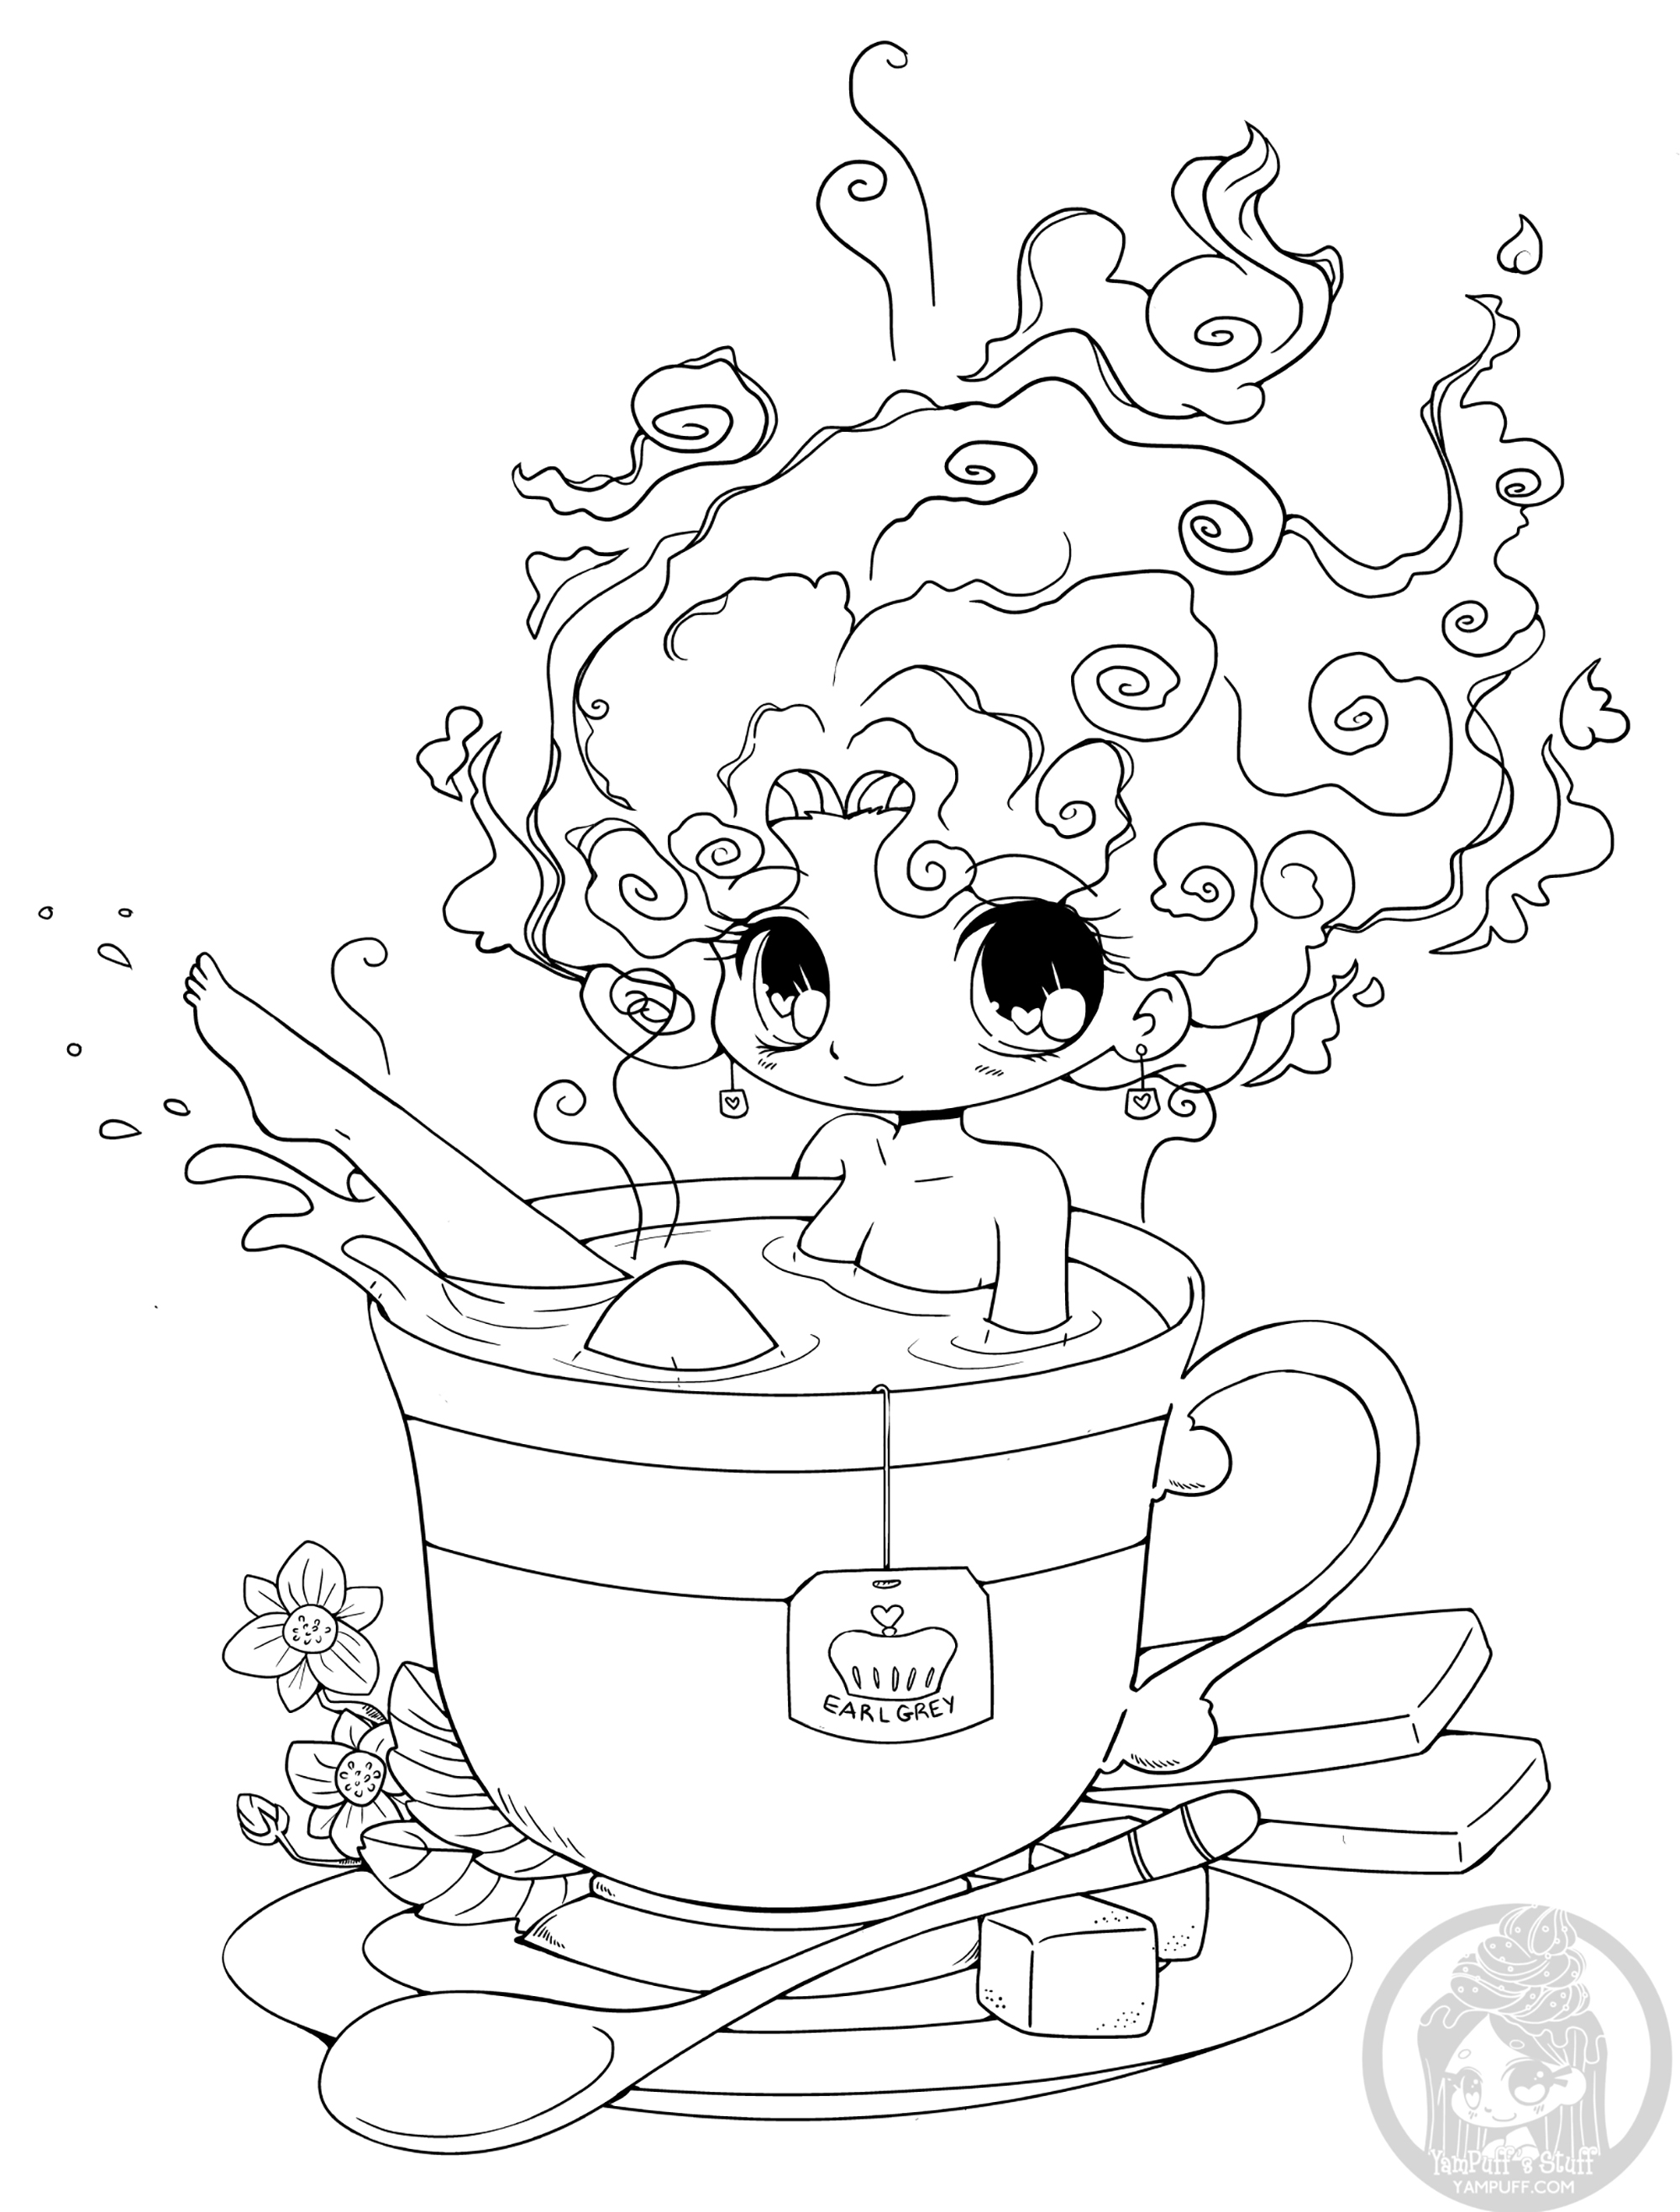 La tasse de thé à la place de lai baignoire... Ca vous tente?